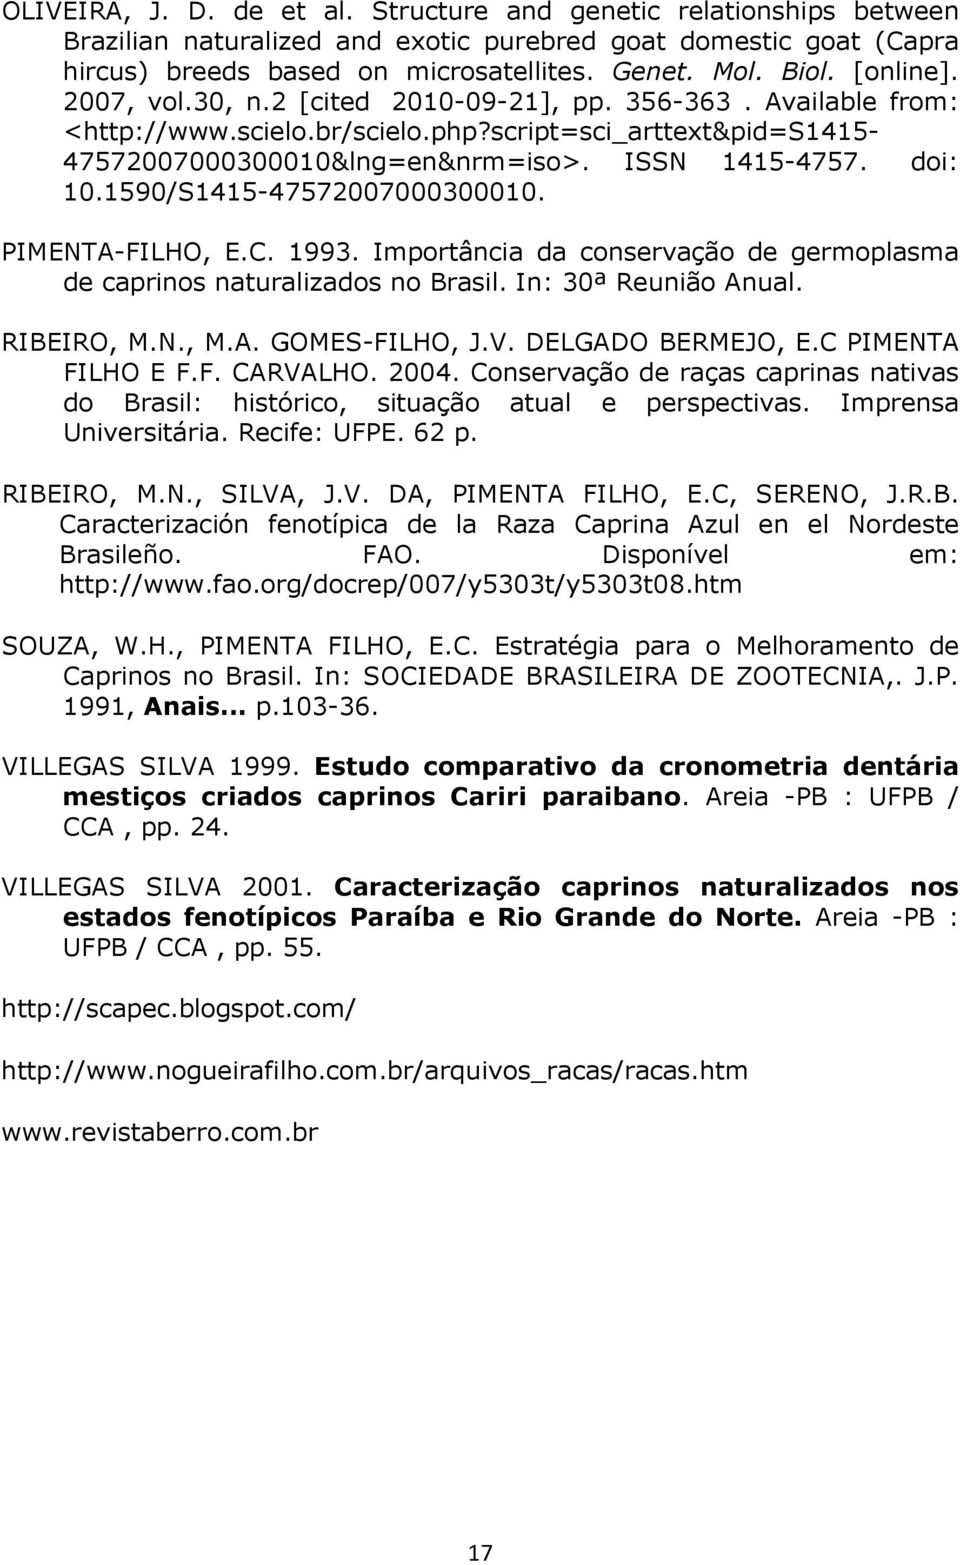 1590/S1415-47572007000300010. PIMENTA-FILHO, E.C. 1993. Importância da conservação de germoplasma de caprinos naturalizados no Brasil. In: 30ª Reunião Anual. RIBEIRO, M.N., M.A. GOMES-FILHO, J.V.